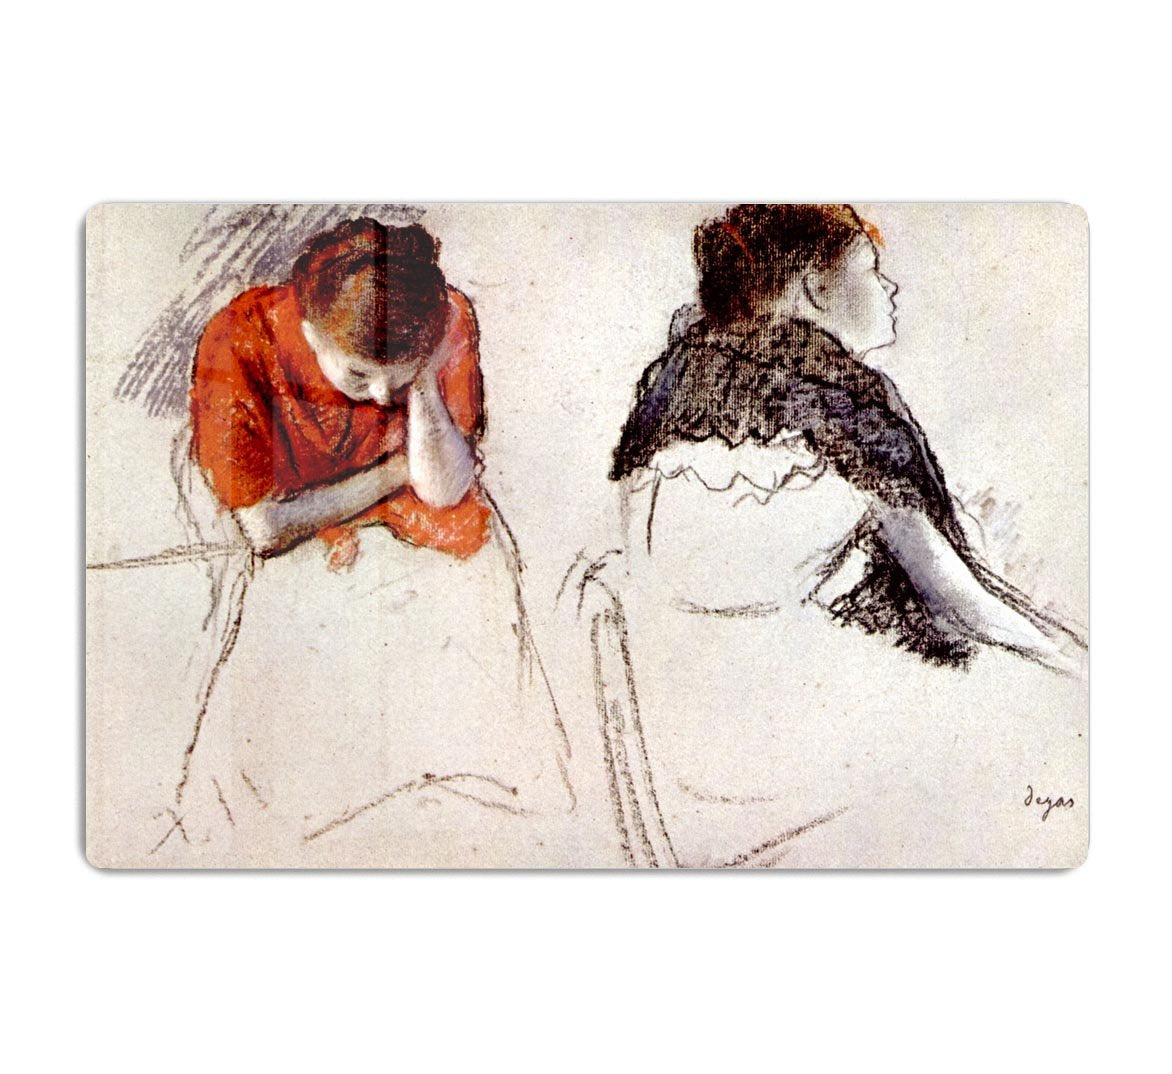 Two women seated by Degas HD Metal Print - Canvas Art Rocks - 1